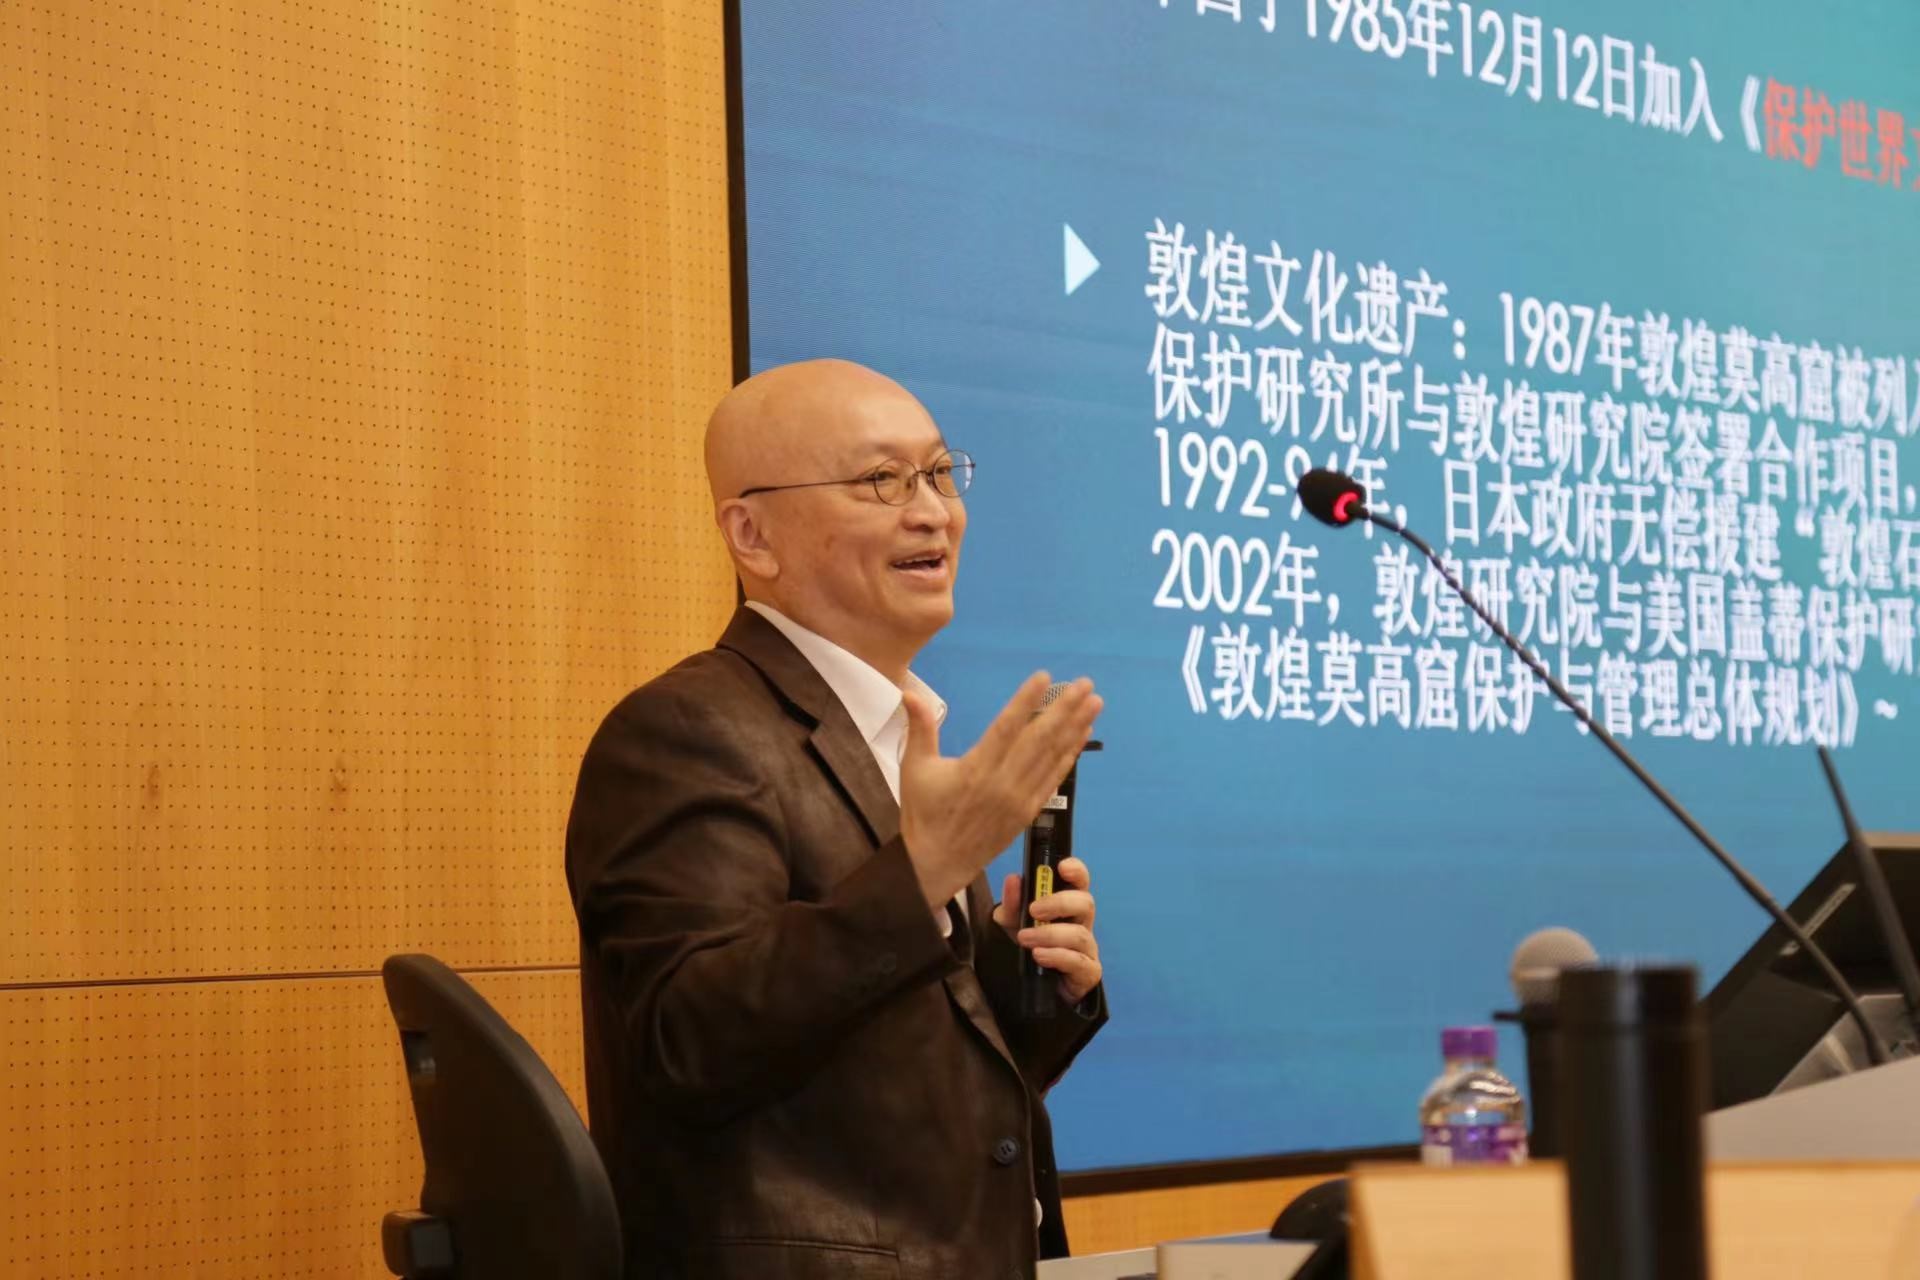 宁强教授讲座拉开了“文化遗产科普月”序幕。传承和弘扬中华文化	。</p><p style=